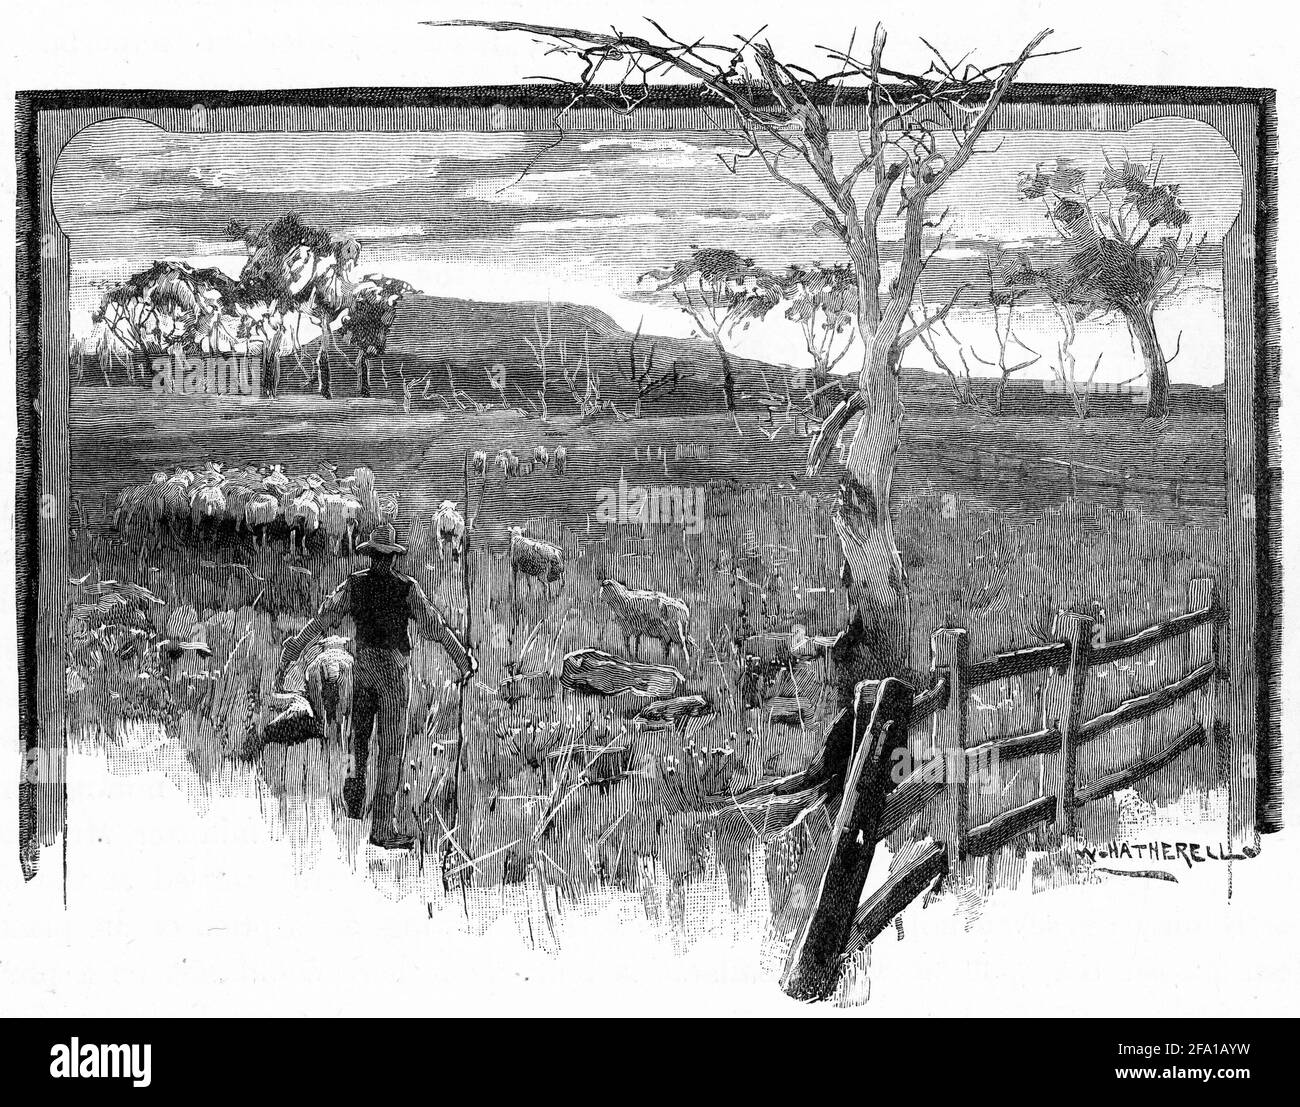 Gravure d'un homme herding brebis au mont Buninyong, de Lal-Lal. Ballarat. Australie, vers 1880 Banque D'Images